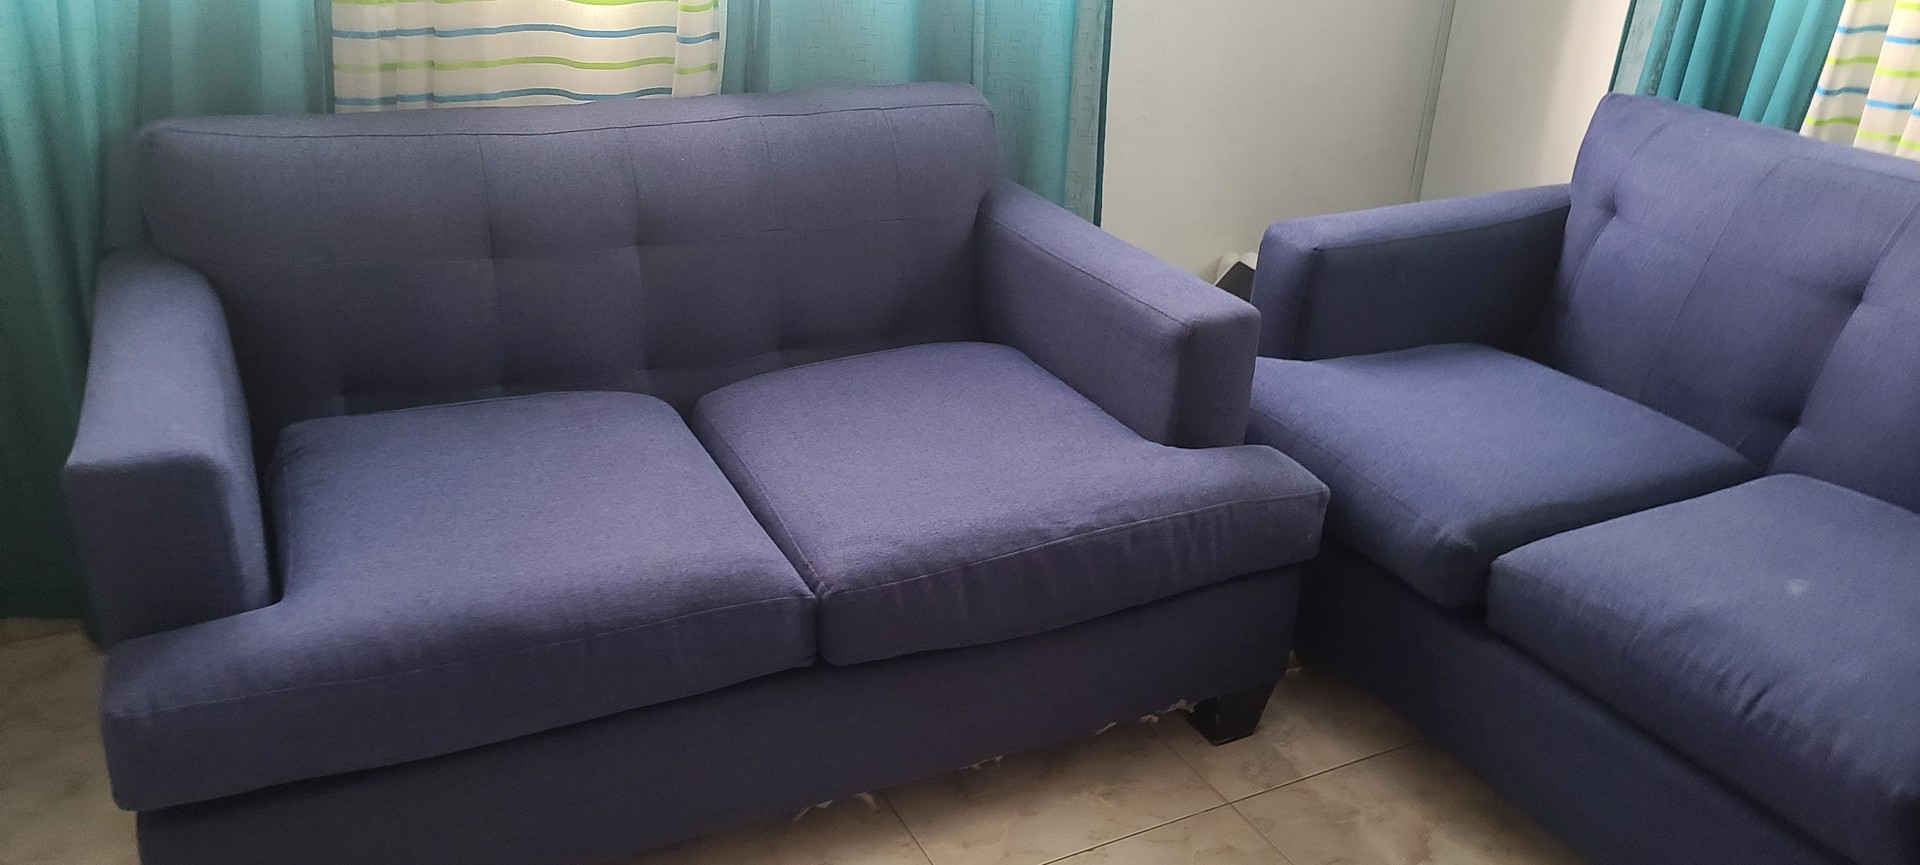 muebles y colchones - Juego de muebles azul oscuro  (1 mueble de 3 plazas y 1 de 2 plazas)  2